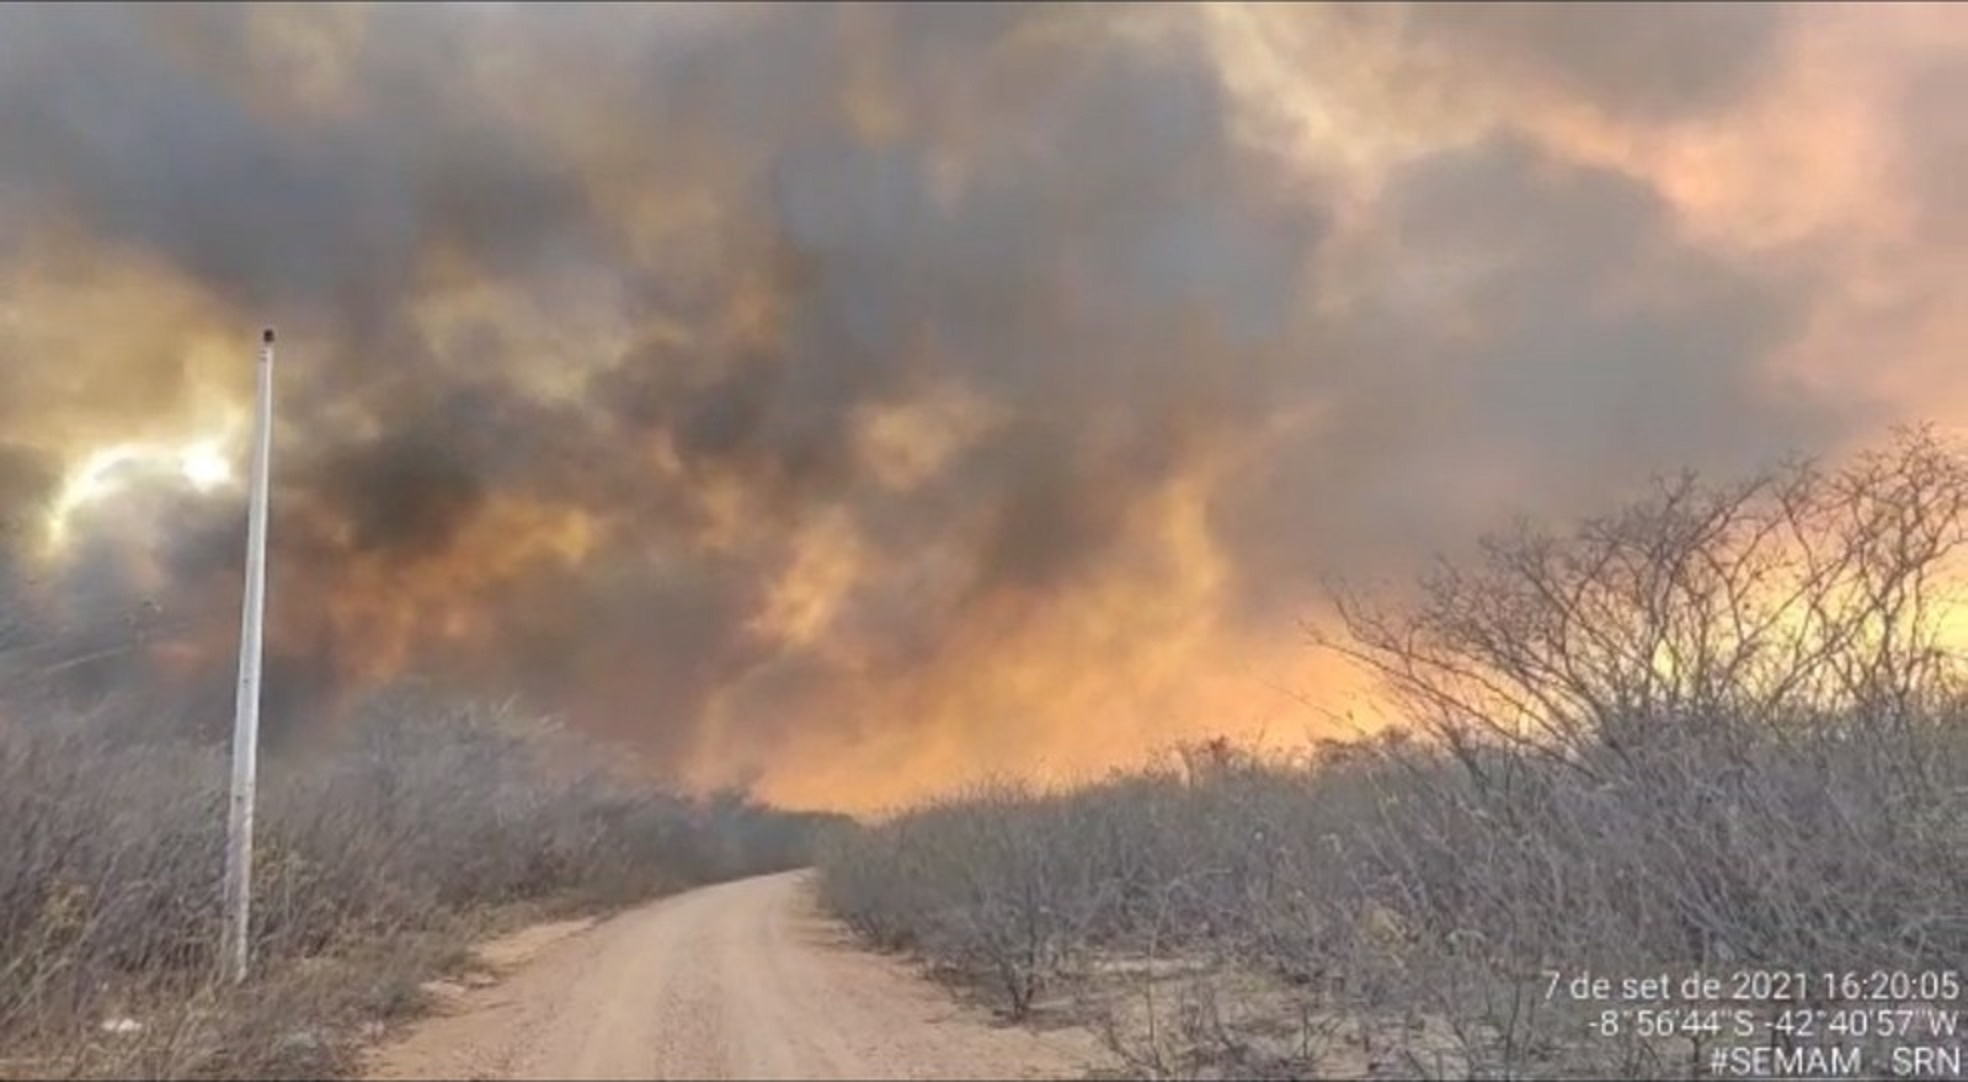 Incêndio atinge zona rural de São Raimundo Nonato e ameaça Parque Nacional da Serra da Capivara